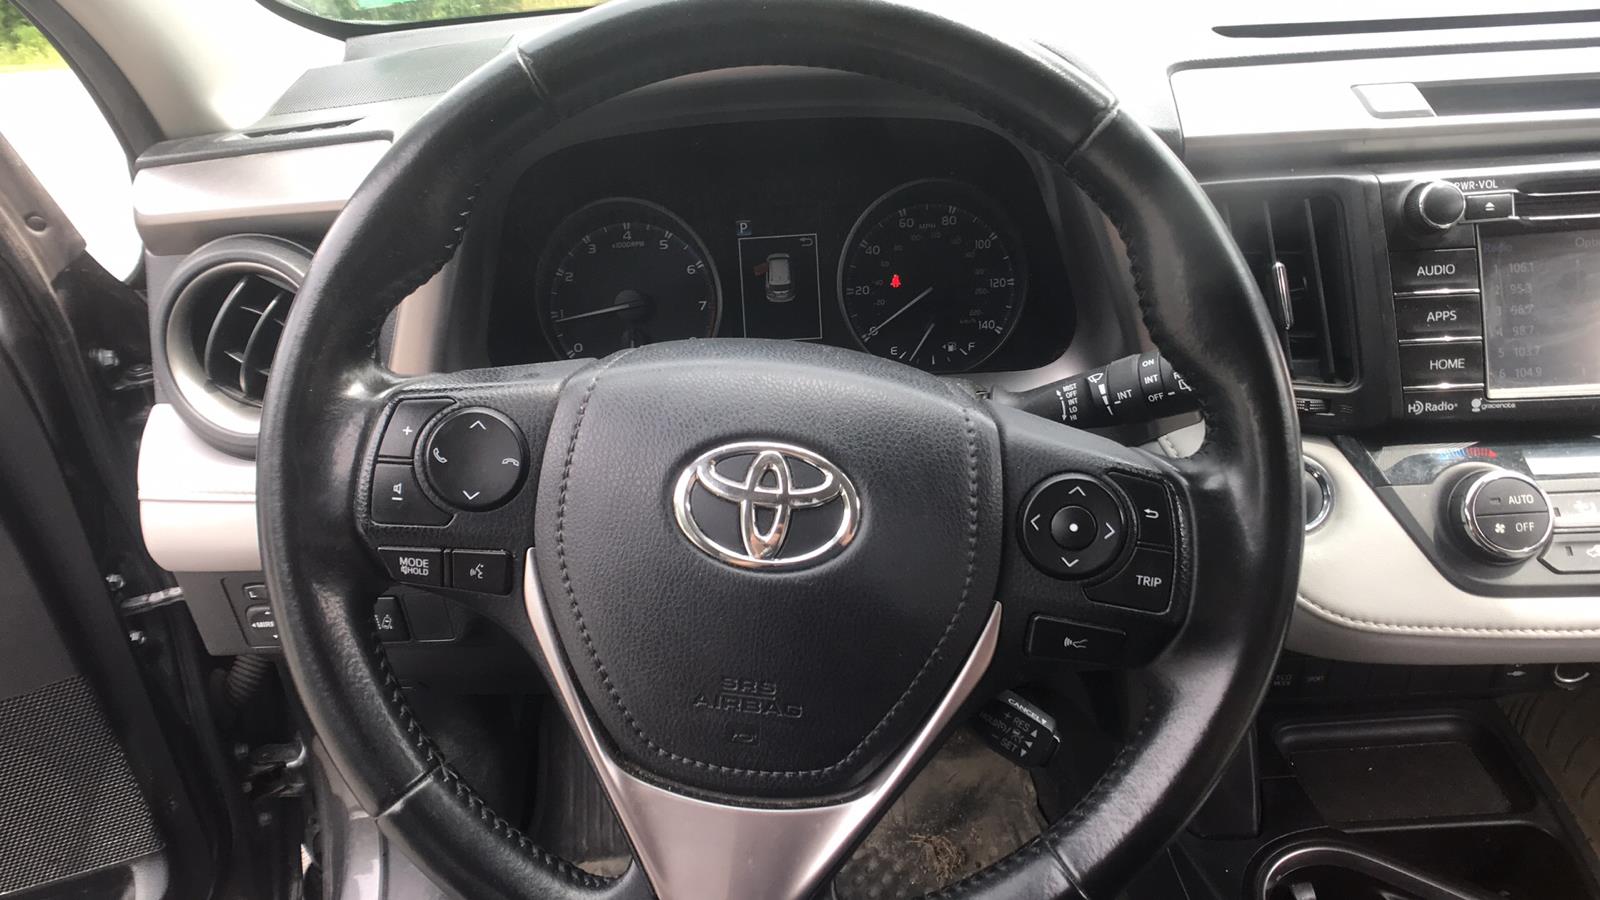 2017 Toyota RAV4 Sport Utility